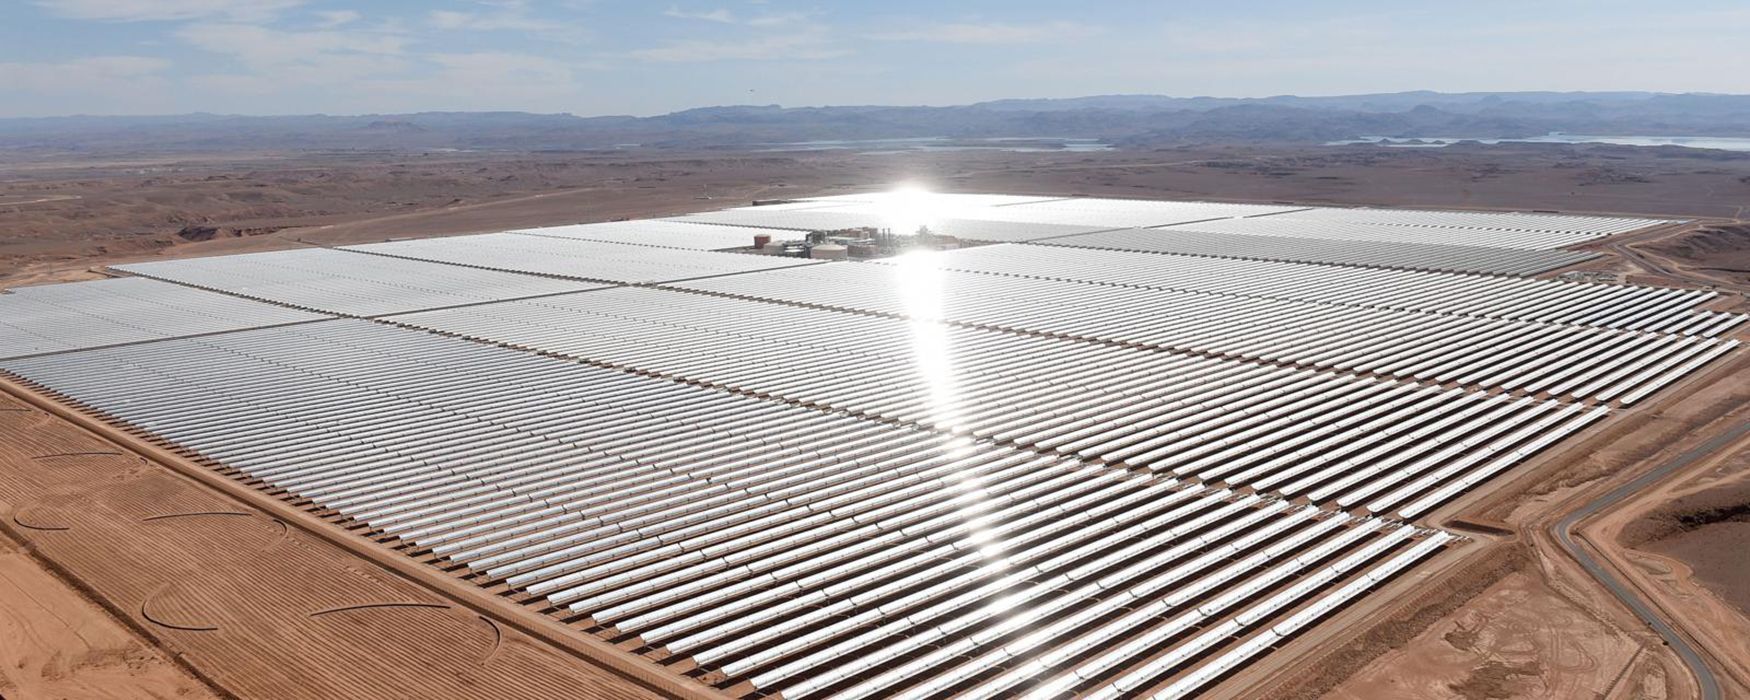 Крупнейшая в Африке солнечная электростанция построена: на что она способна – видео